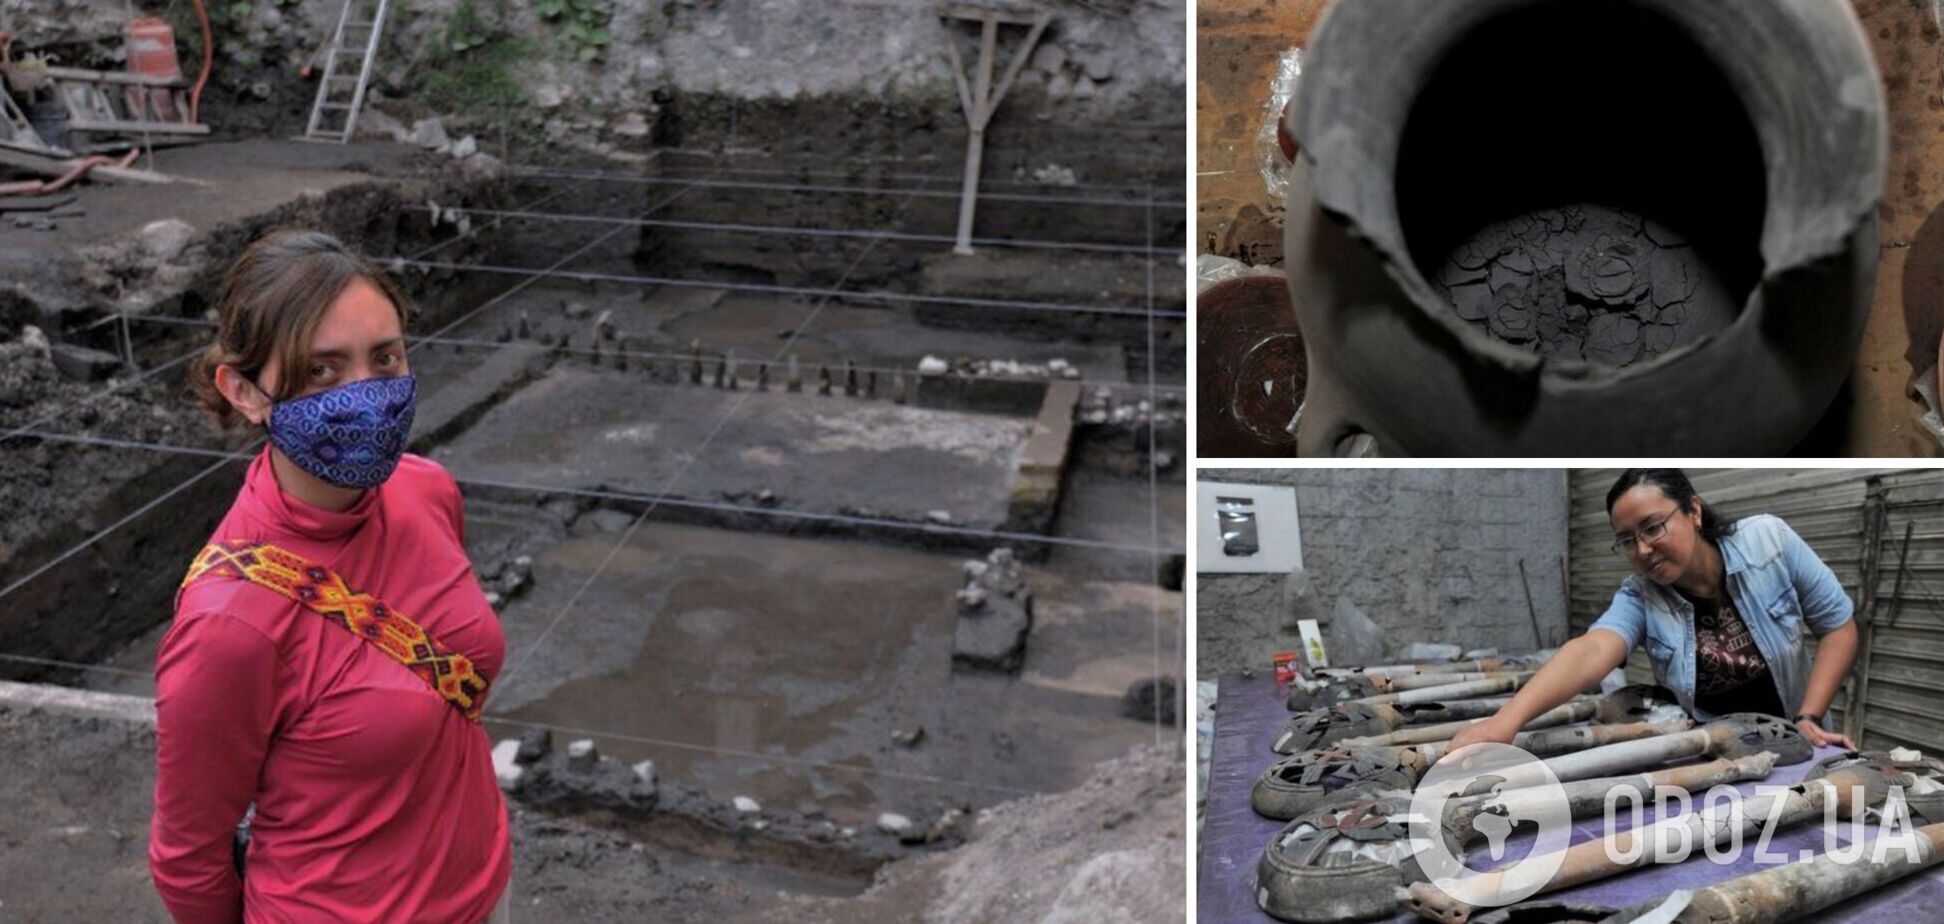 Археологи знайшли у Мексиці вівтар ацтеків: там зберігався горщик із людським прахом. Фото і відео